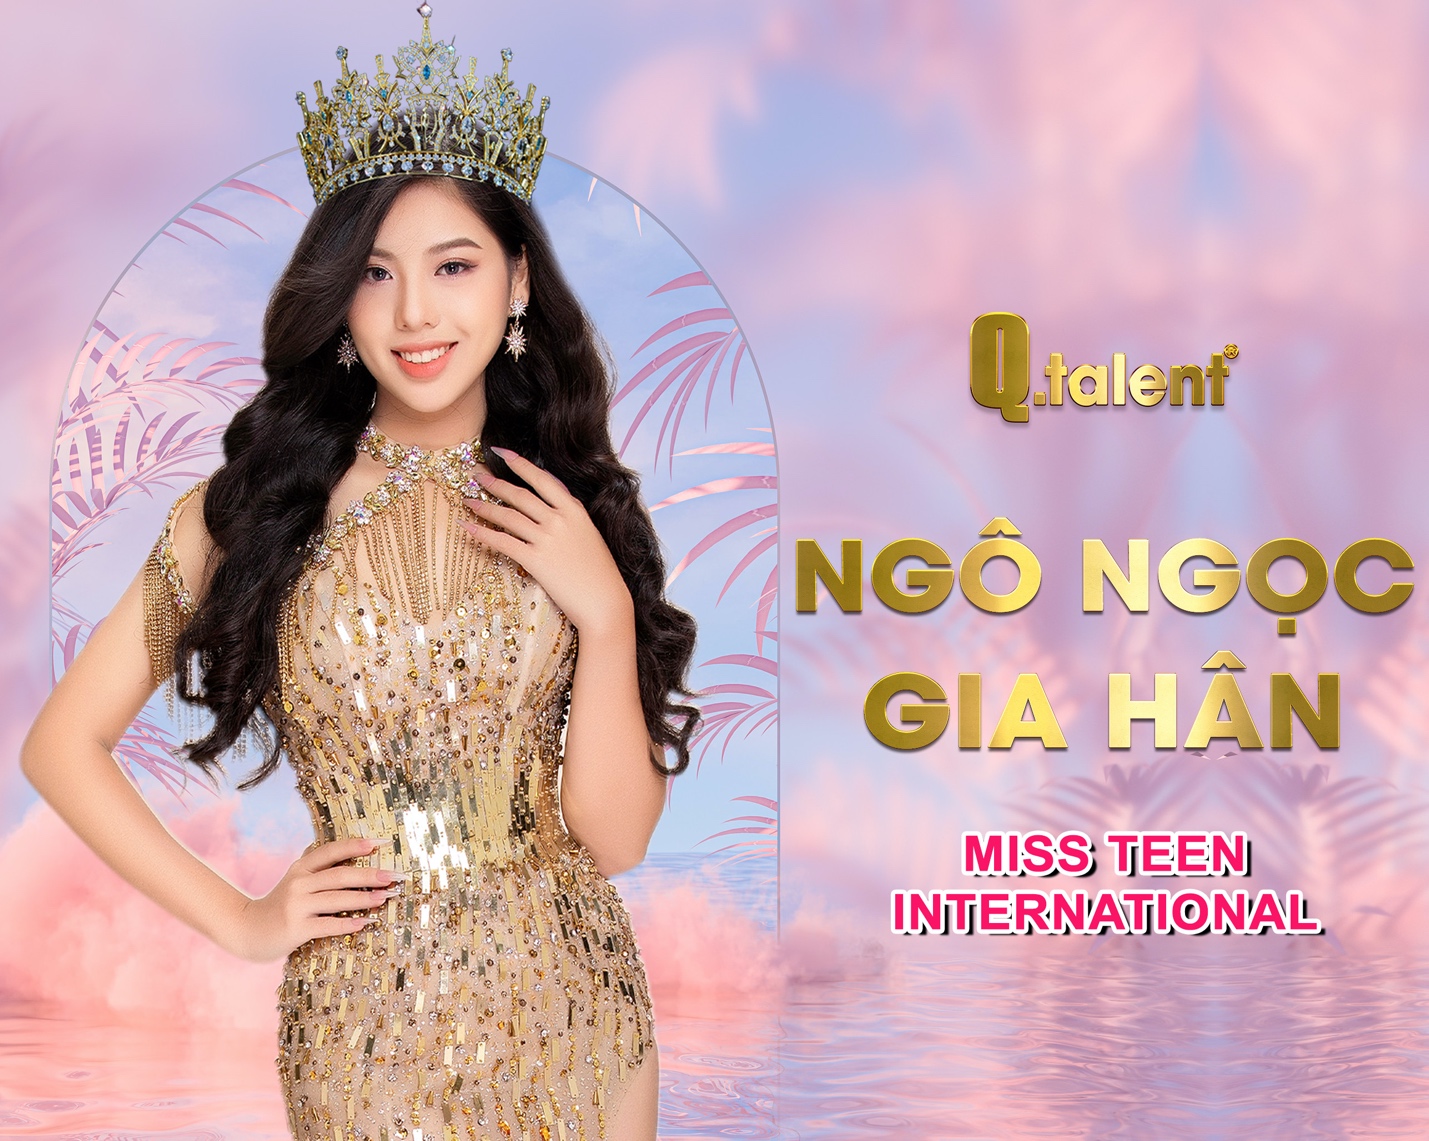 Công ty truyền thông Q-Talent, đơn vị uy tín chuyên tổ chức các cuộc thi sắc đẹp và đào tạo hoa hậu ở mọi độ tuổi tại Việt Nam - Ảnh 3.